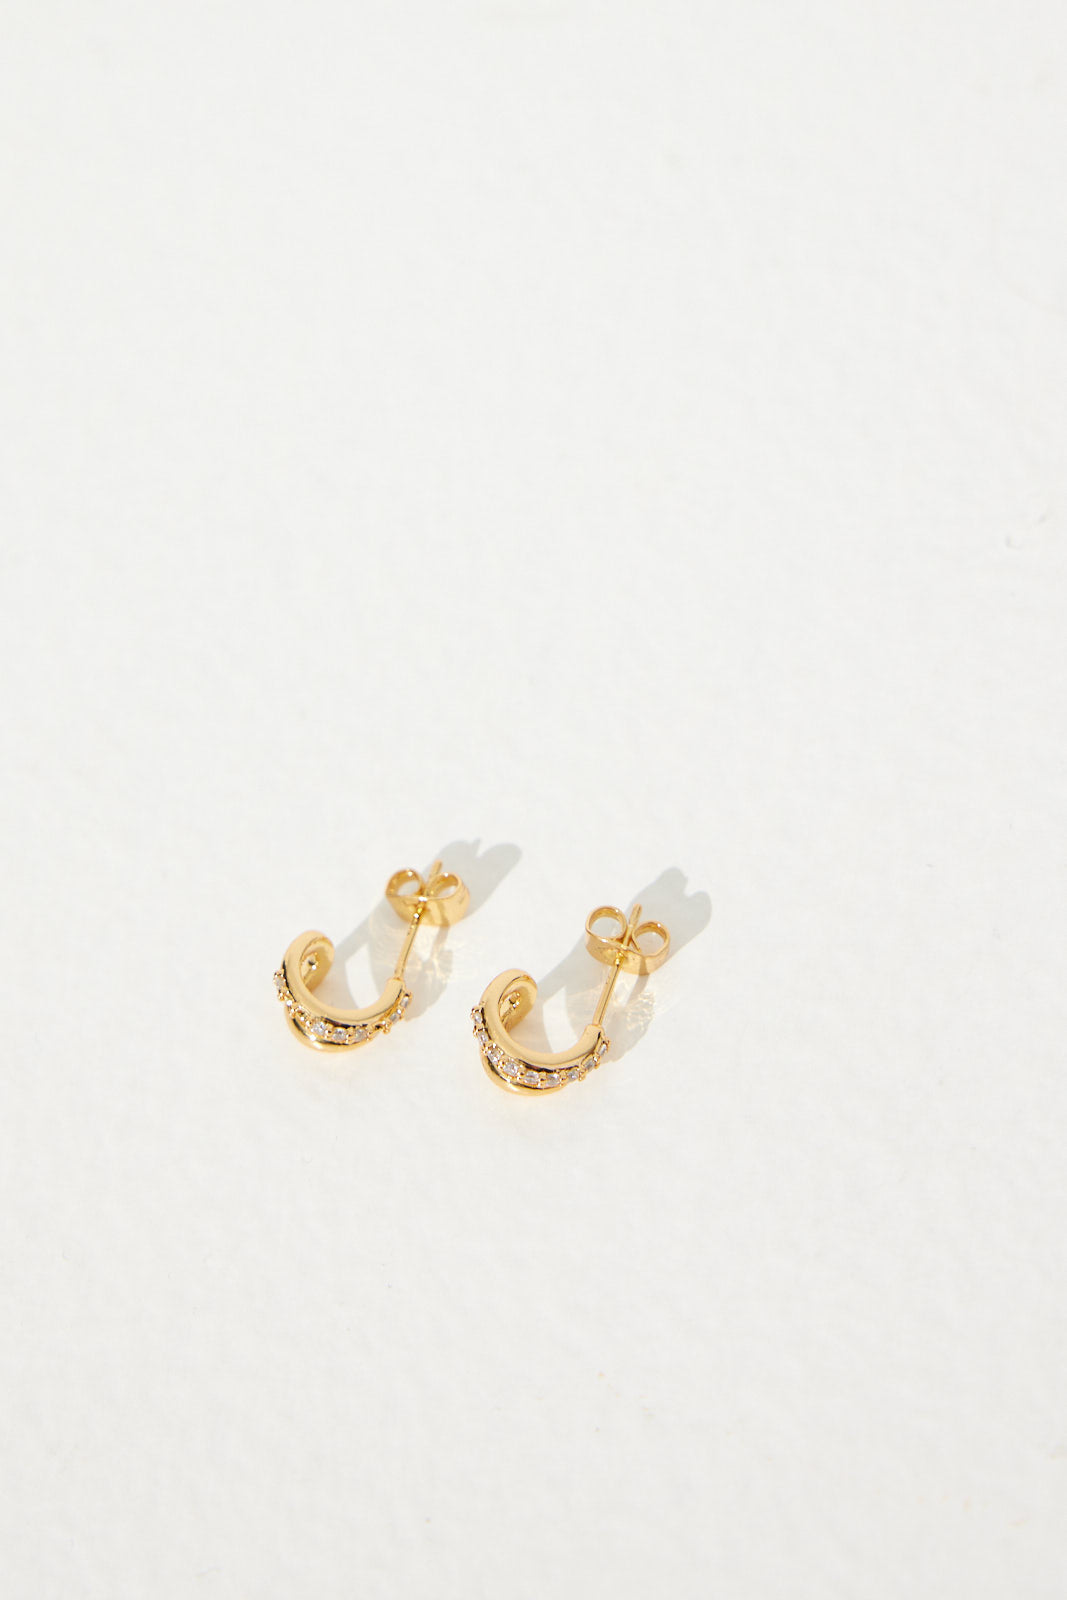 Petite Diamanté Earrings 18K Gold Plated